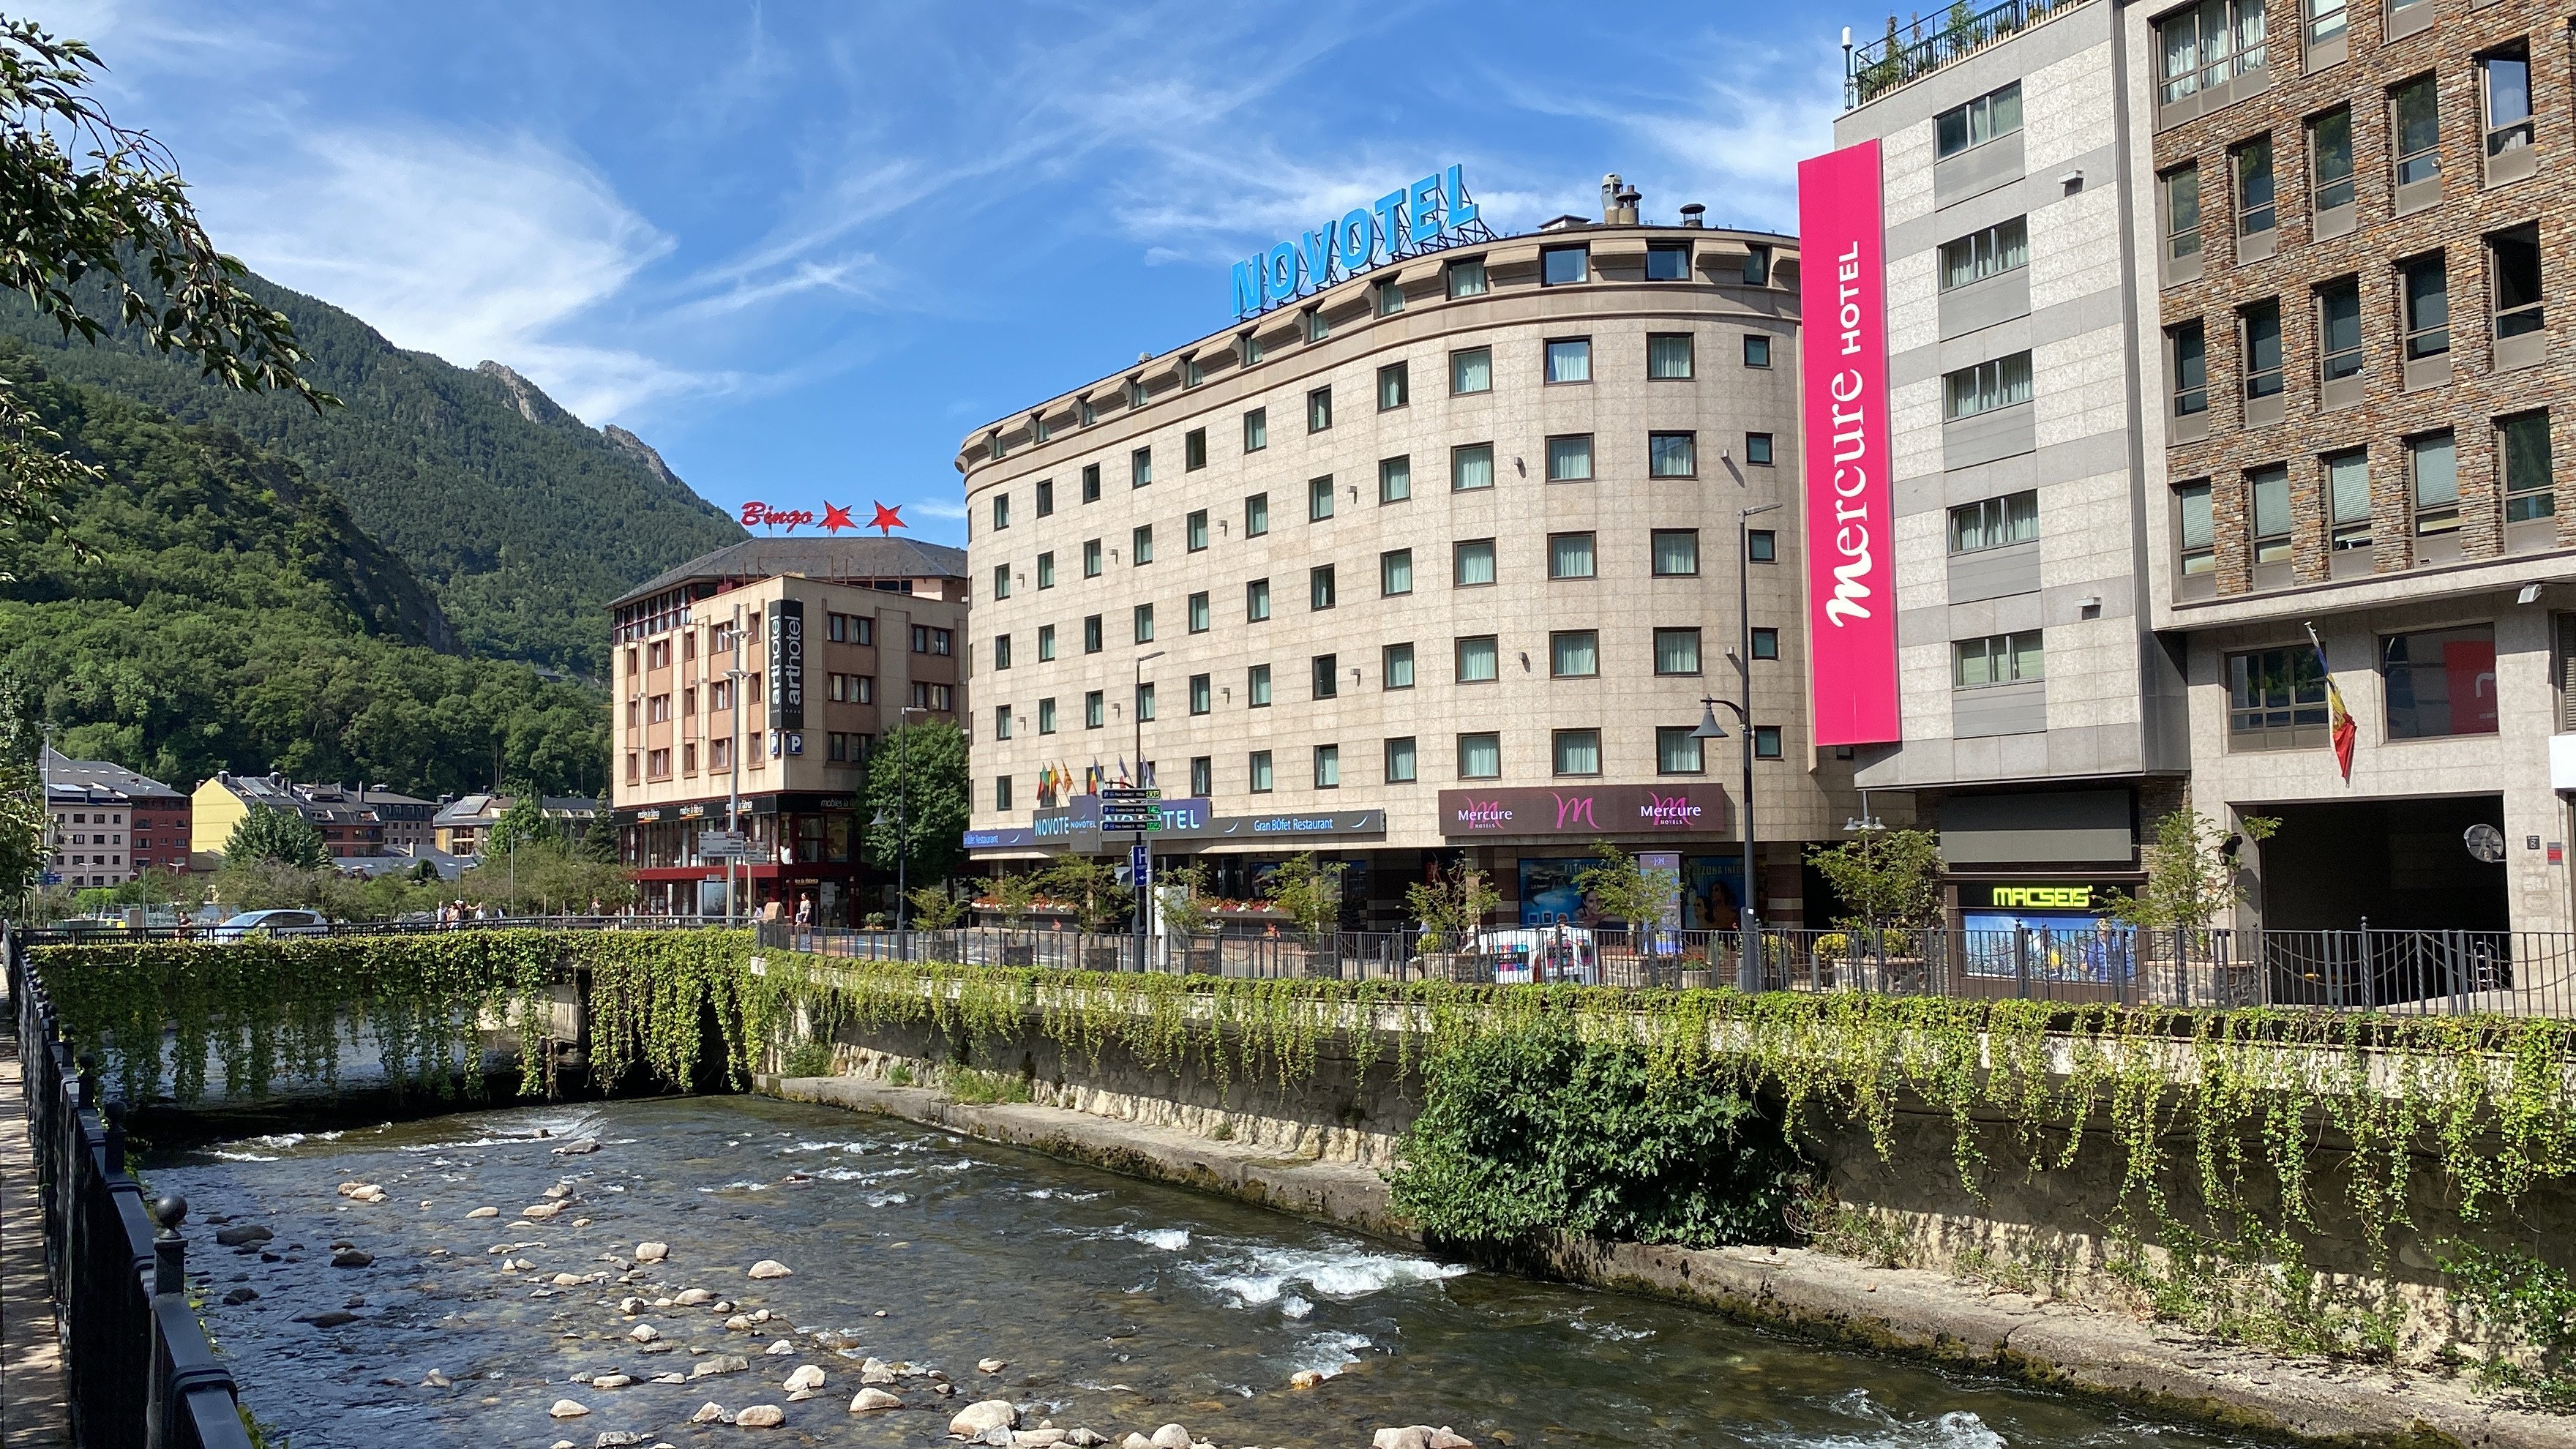 Andorra ja aplica una taxa turística d'un a tres euros al dia per pernoctacions